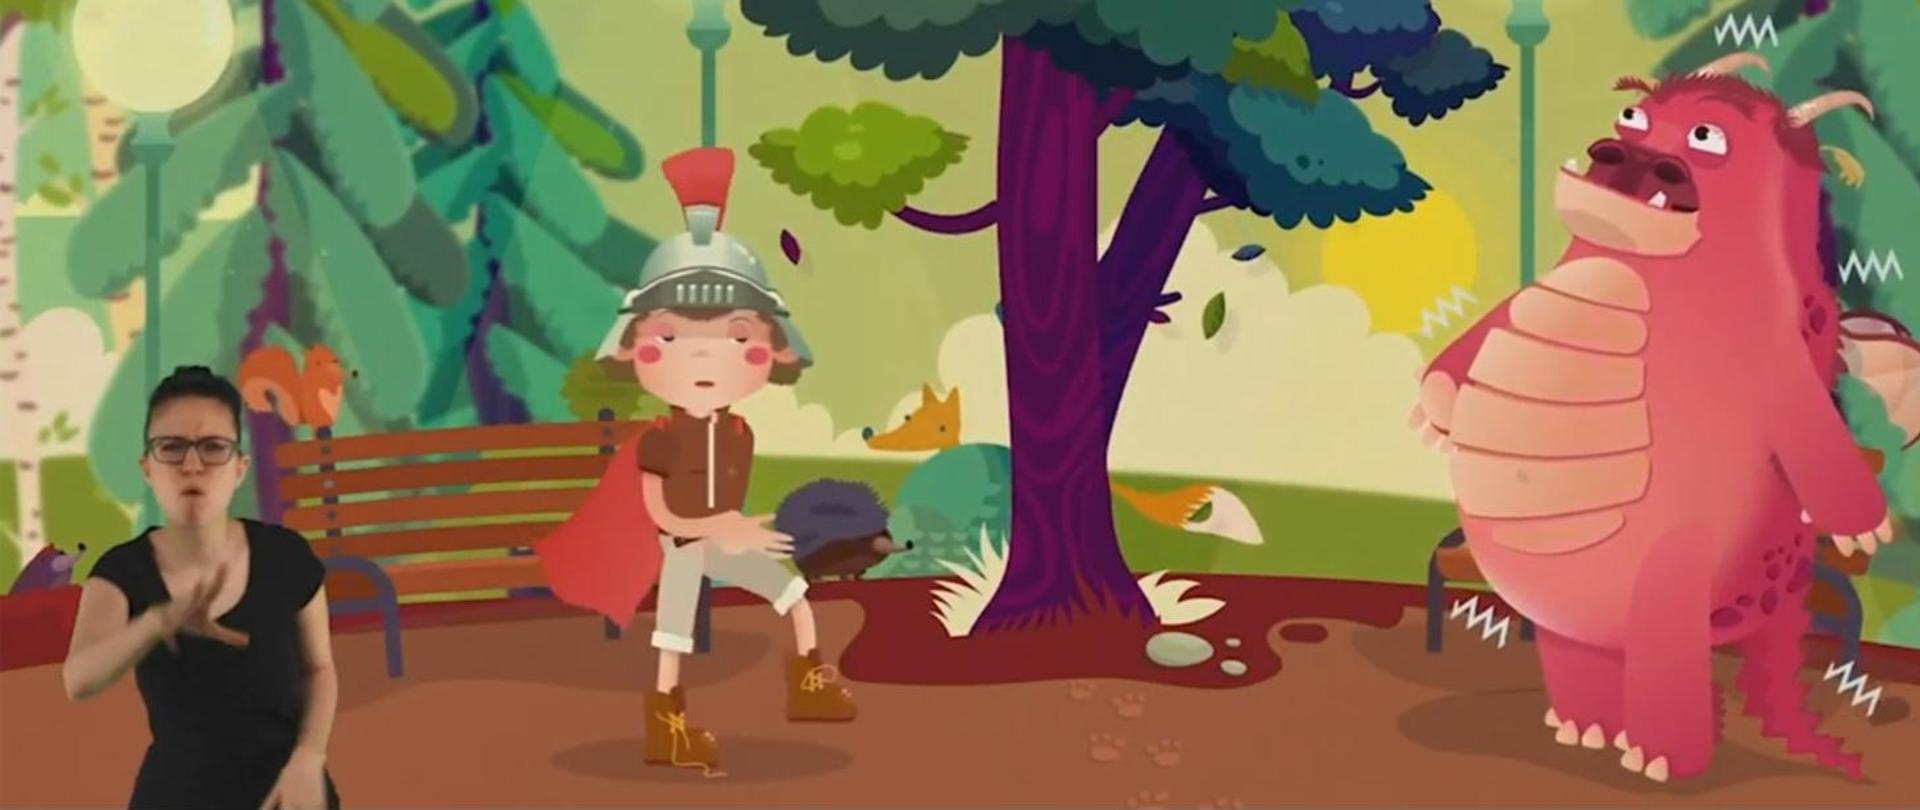 bajkowa postać chłopca w hełmie oraz postać czerwonego małego i przyjaznego smoka stojące w parku, wokół zwierzęta i drzewa. U boku ekrany ikona osoby tłumaczącej w języku migowym